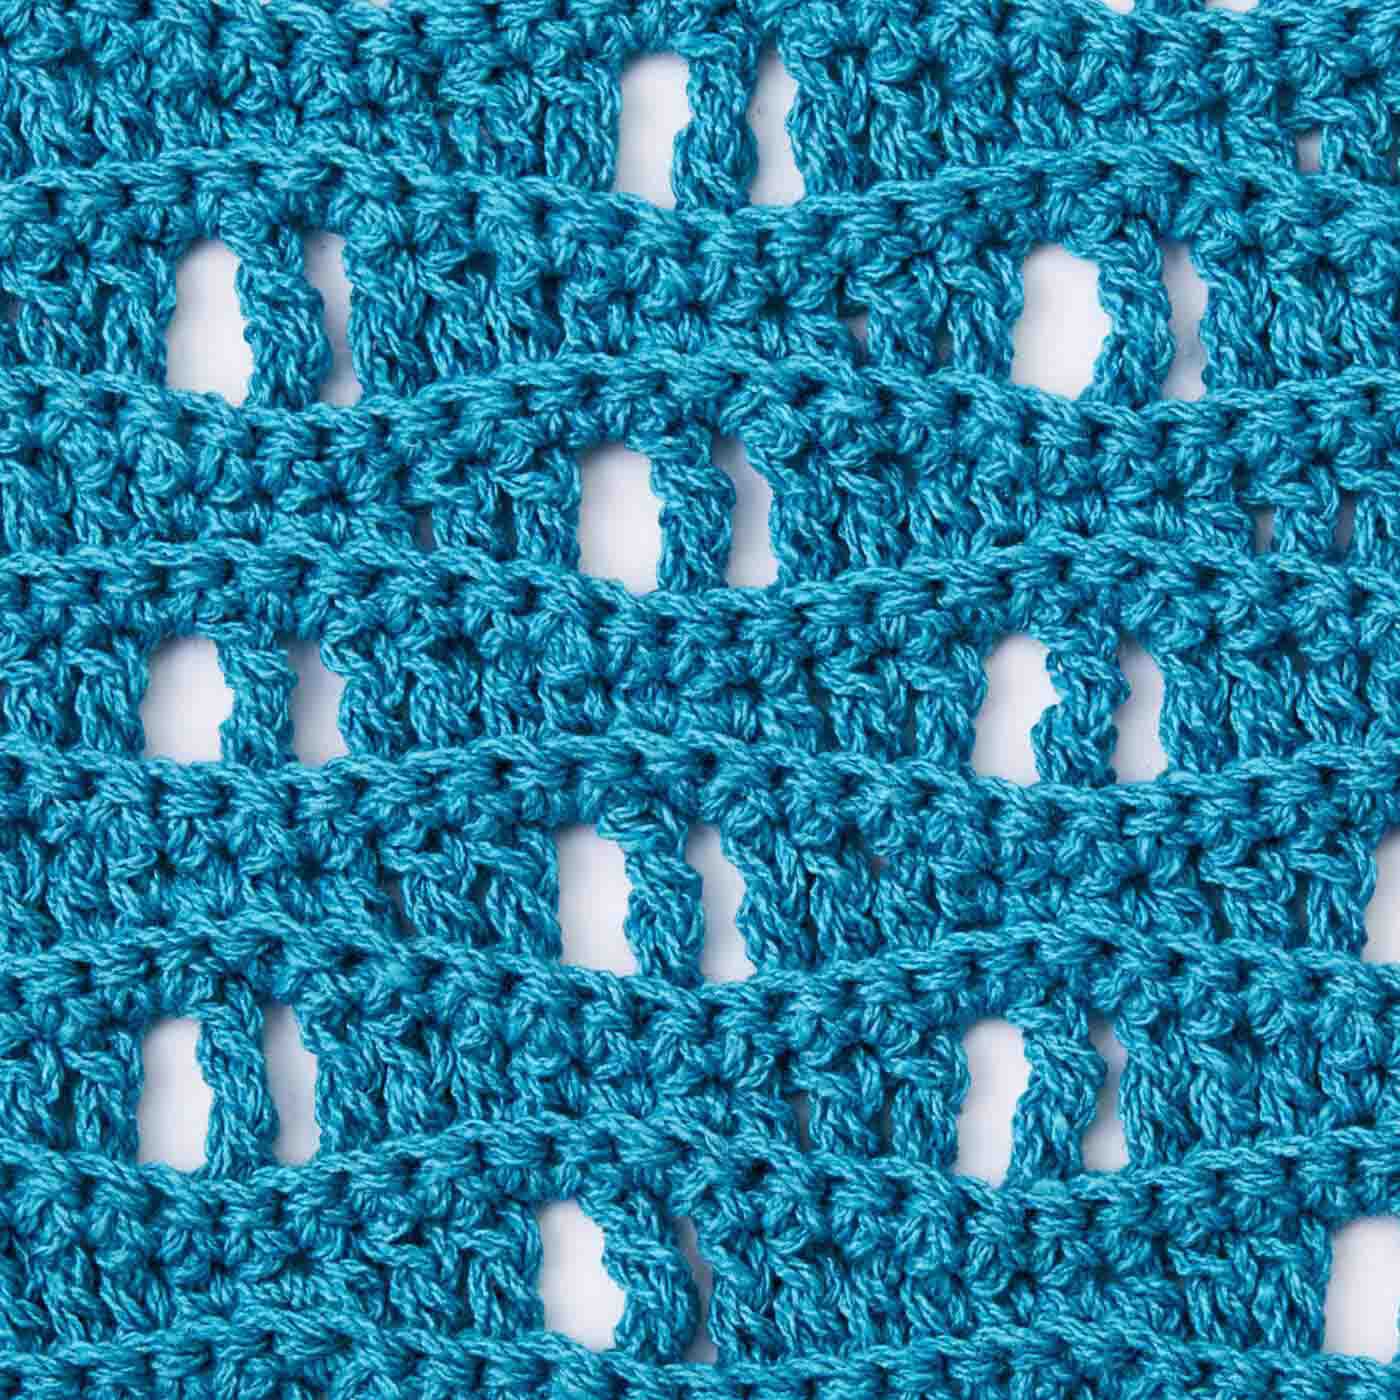 Real Stock|涼しげな編み地が自慢 透け感がおしゃれなかぎ針編みバッグ|1色で編むから糸始末の手間もなくサクサク編めます。底部分は密度の高いこま編みでしっかり。